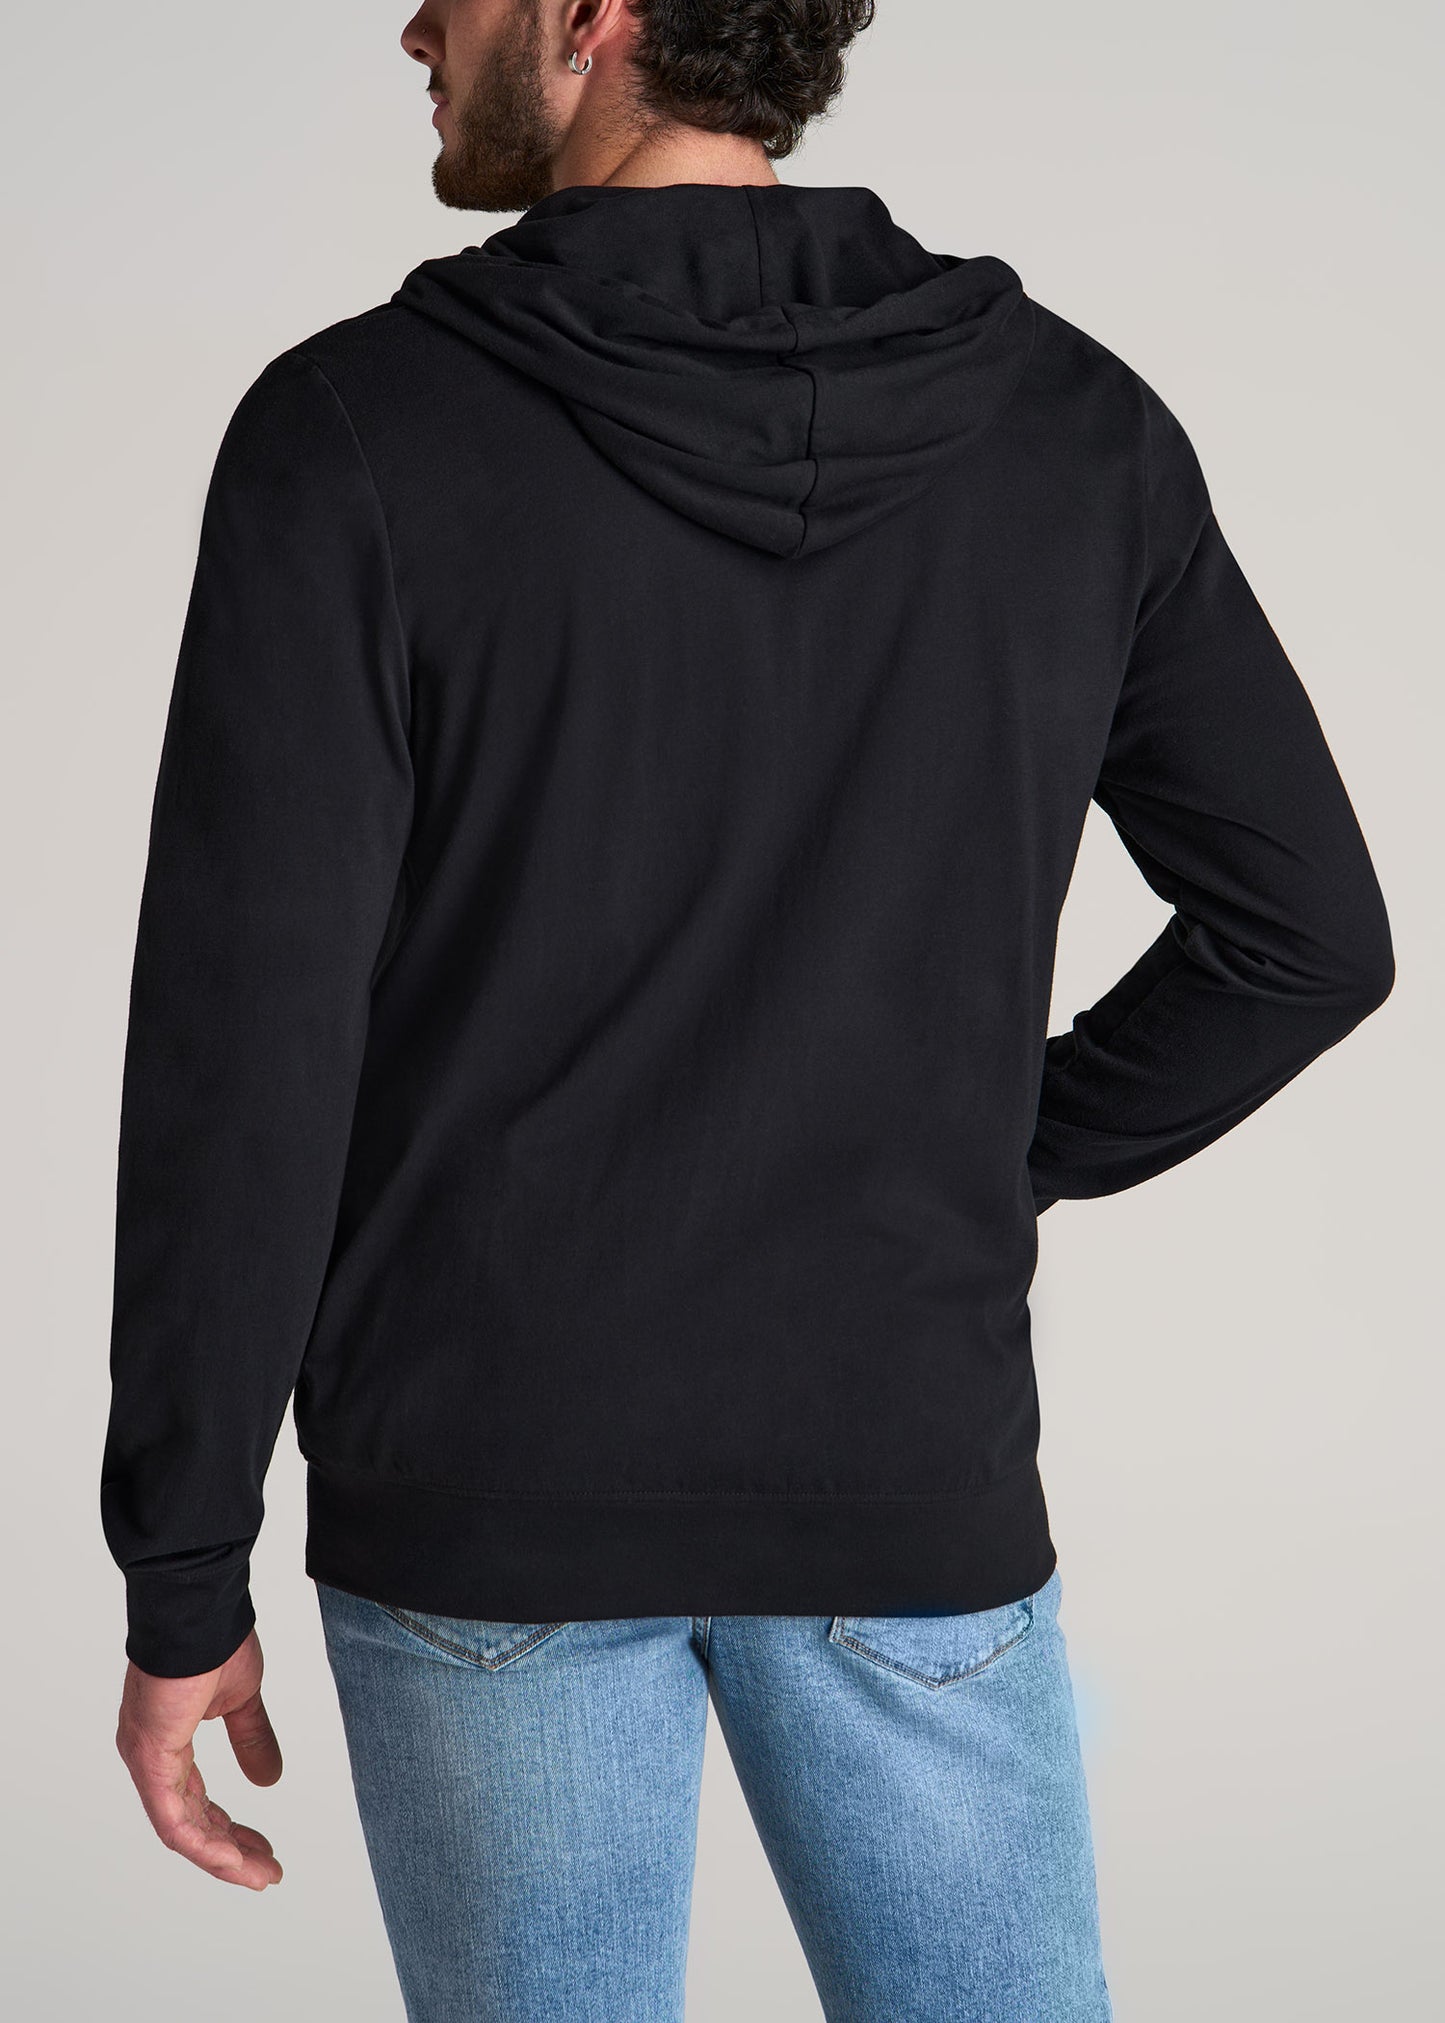 U.S. Polo Assn. Denim Co. Full Sleeve Printed Men Sweatshirt - Buy U.S.  Polo Assn. Denim Co. Full Sleeve Printed Men Sweatshirt Online at Best  Prices in India | Flipkart.com